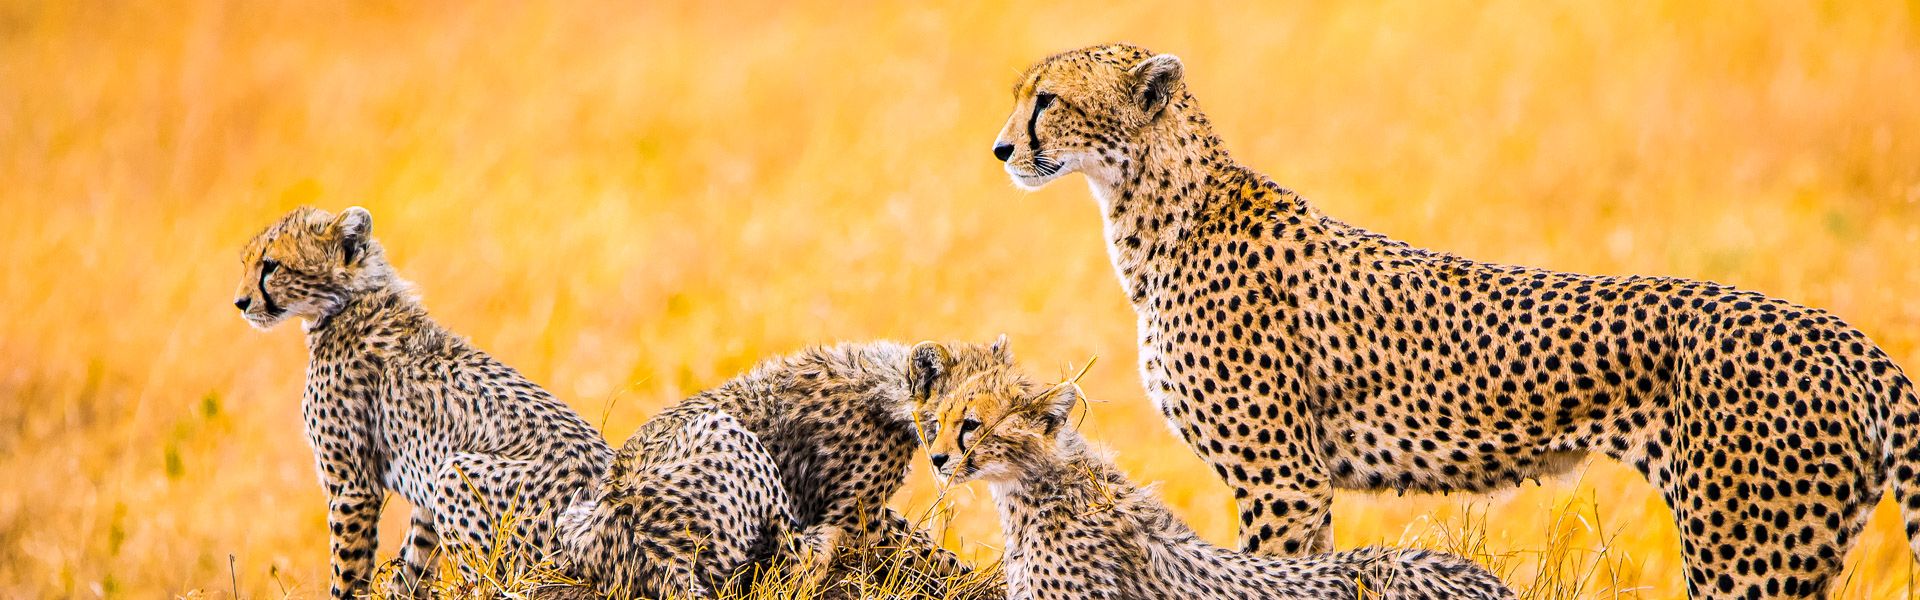 Geparden Familie in der Serengeti |  Karin Barth / Chamleon